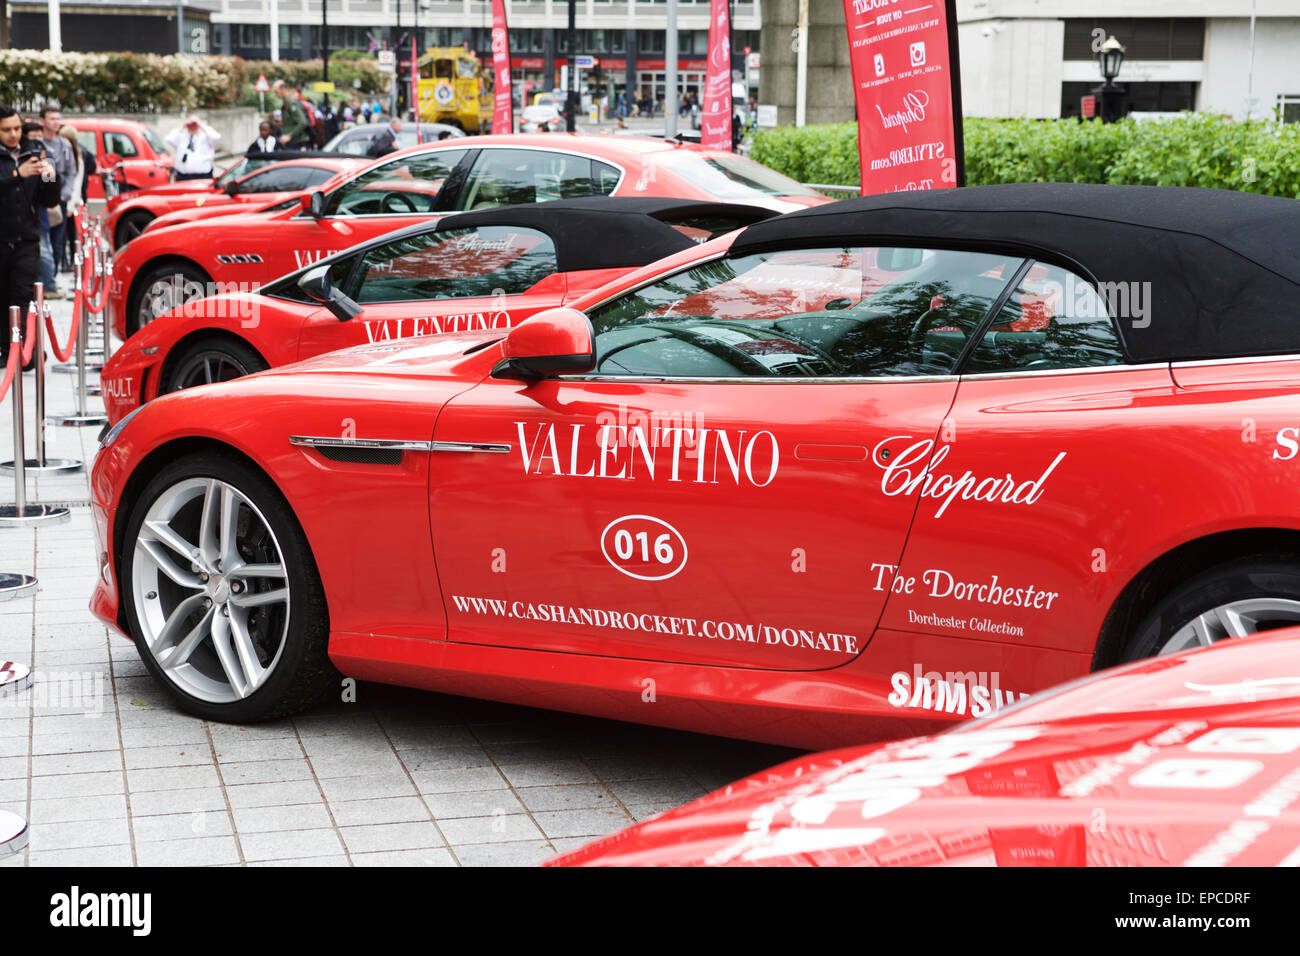 Cash & Tour a razzo 2015 inizia a Londra (Southbank), UK. Caro rosso Italiano e Tedesco auto sul display. Foto Stock